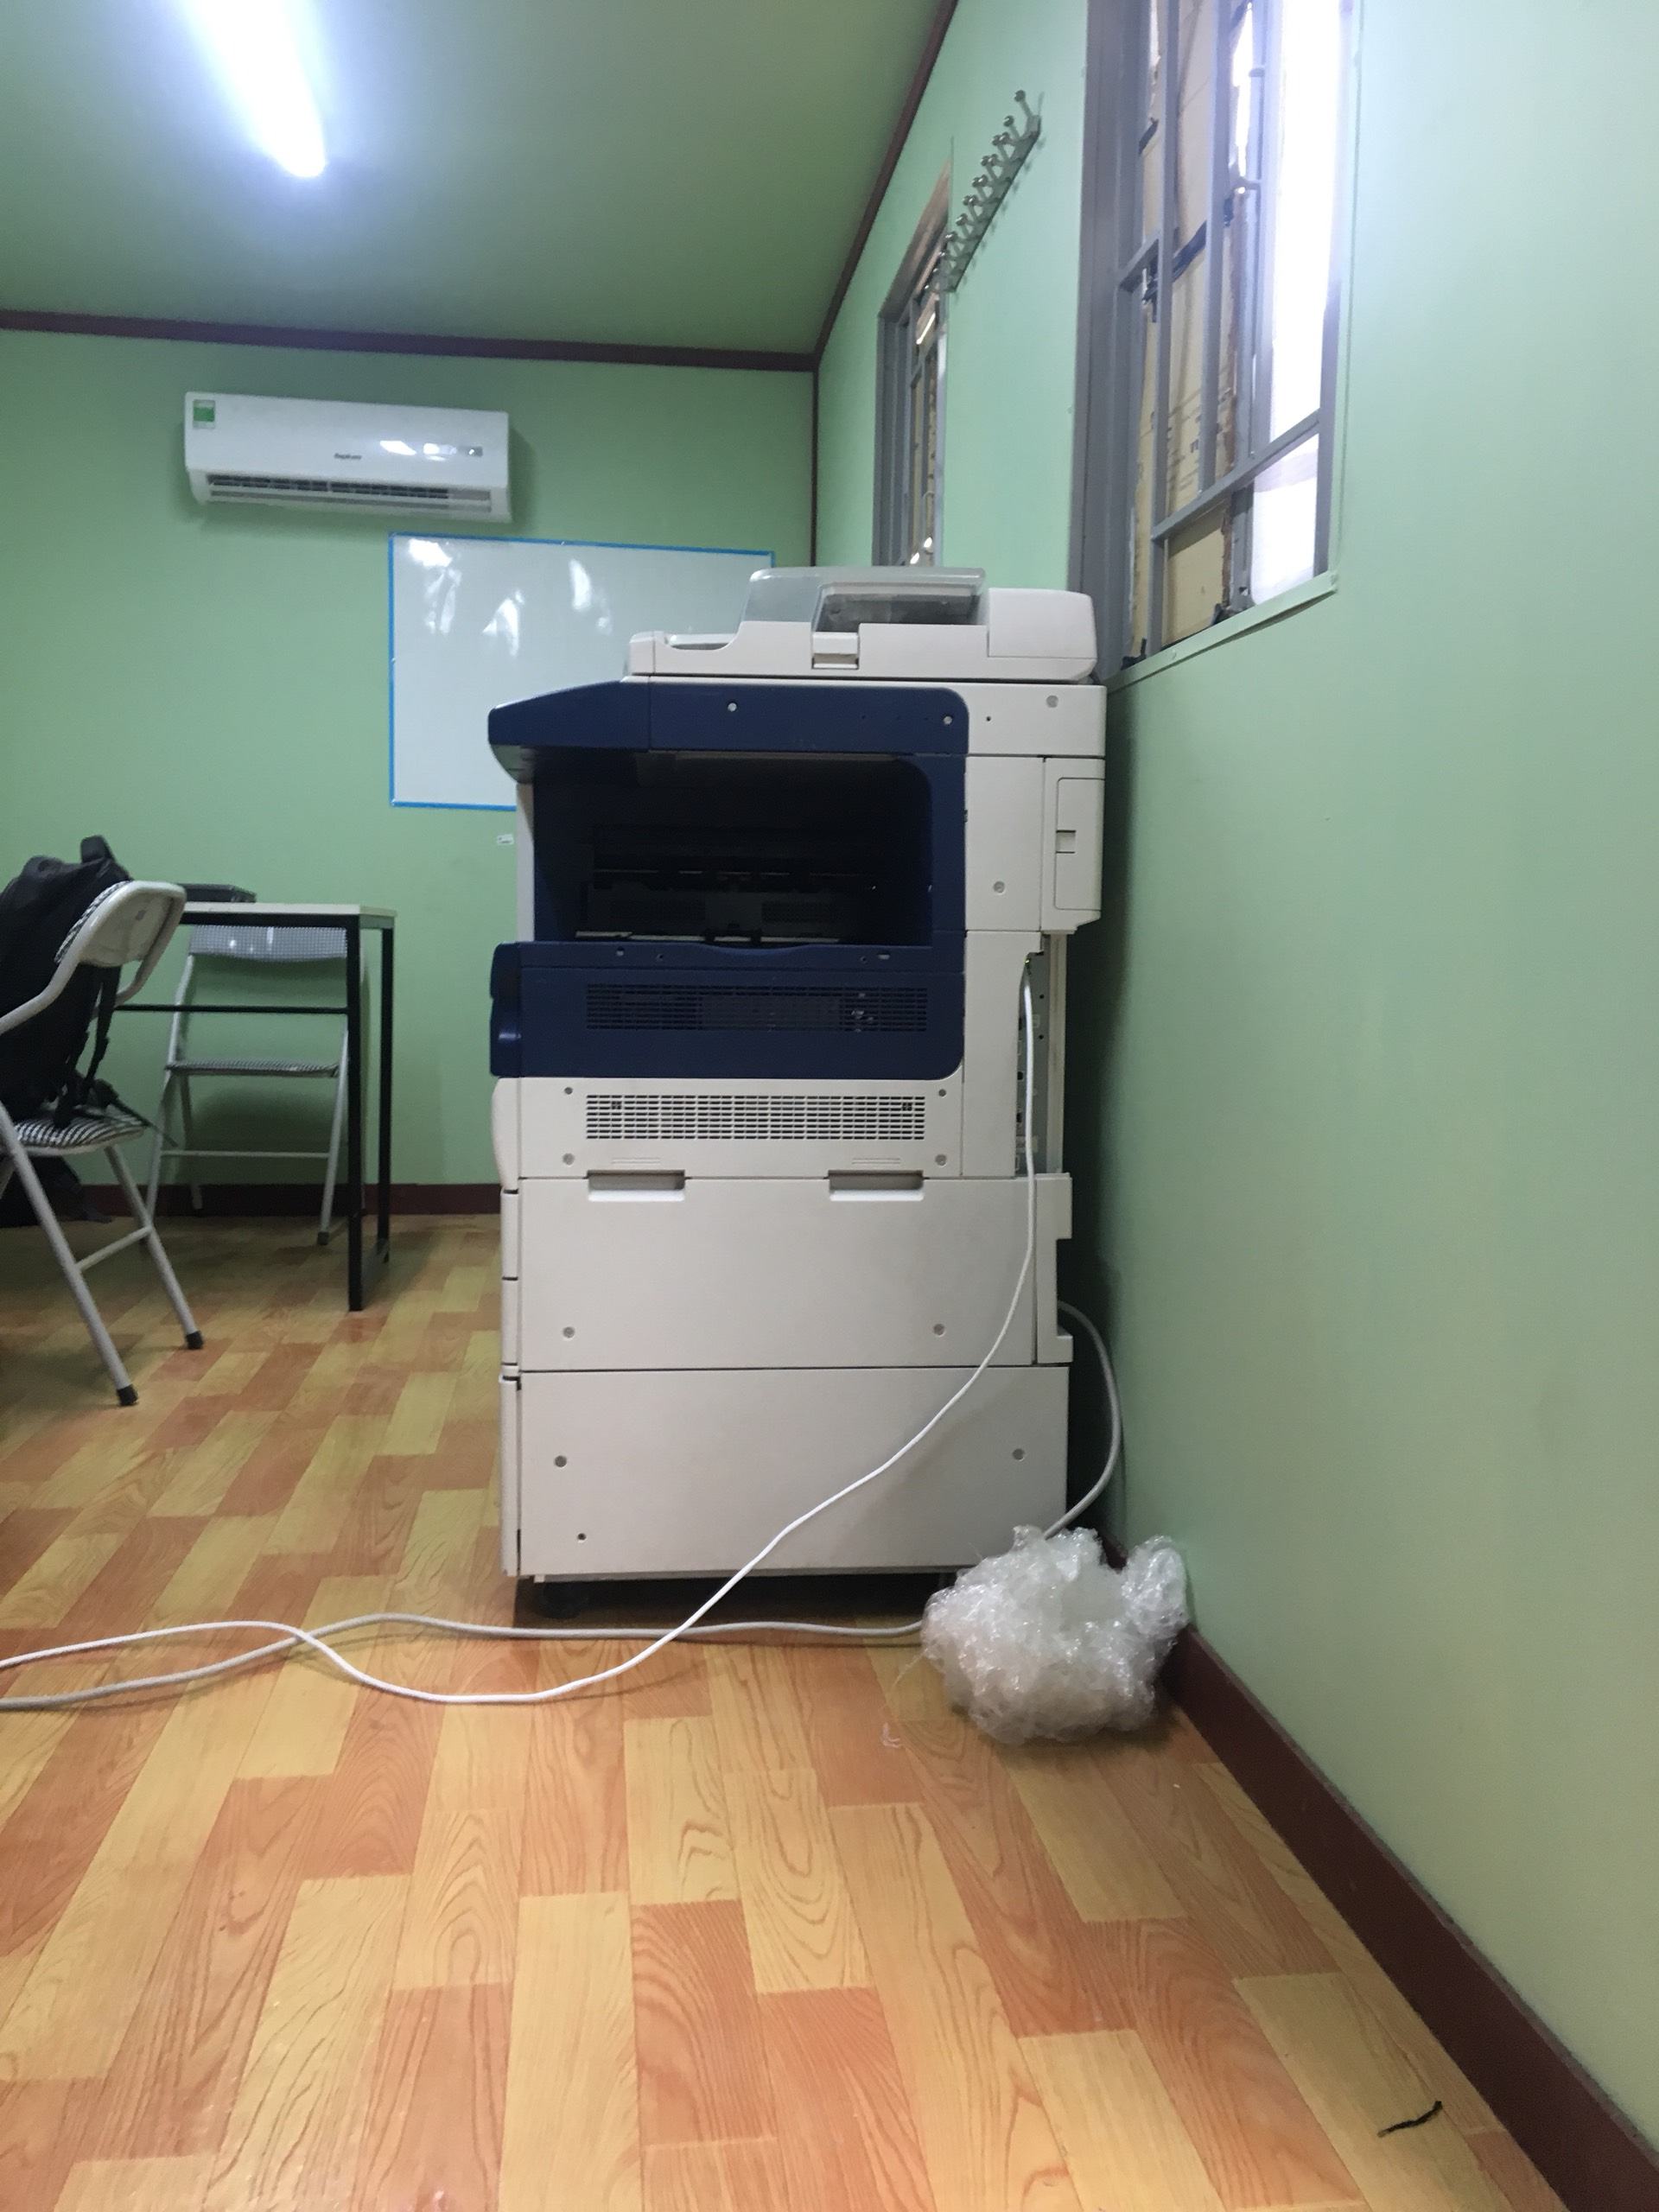 Cho thuê máy photocopy Xerox 3065 khu công nghiệp Hải Dương